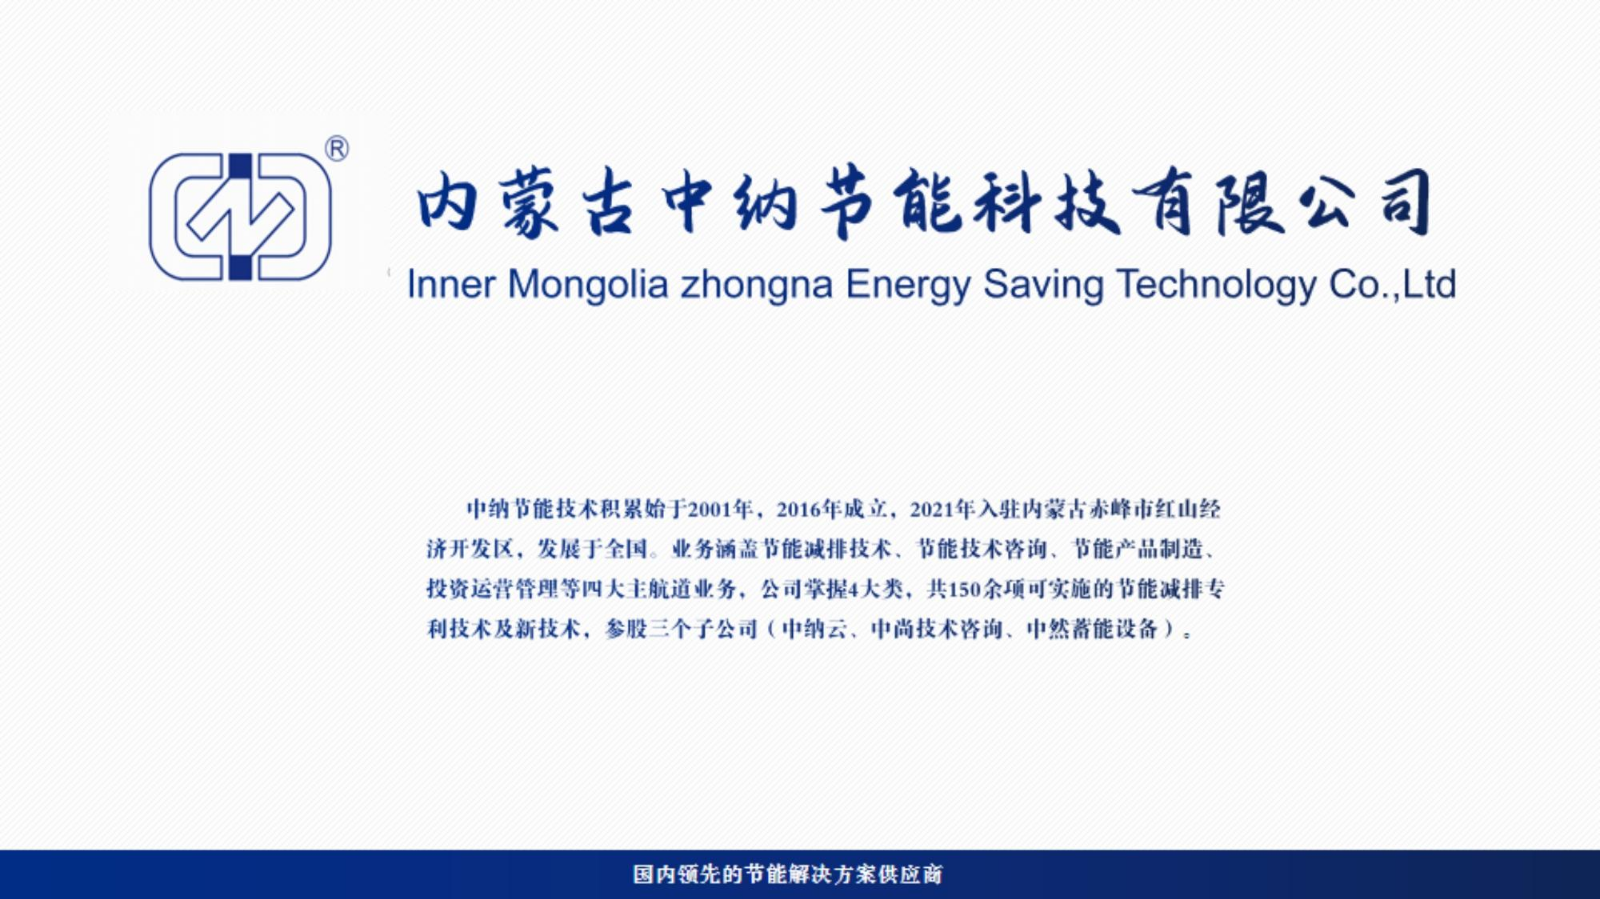 内蒙古中纳节能科技有限公司